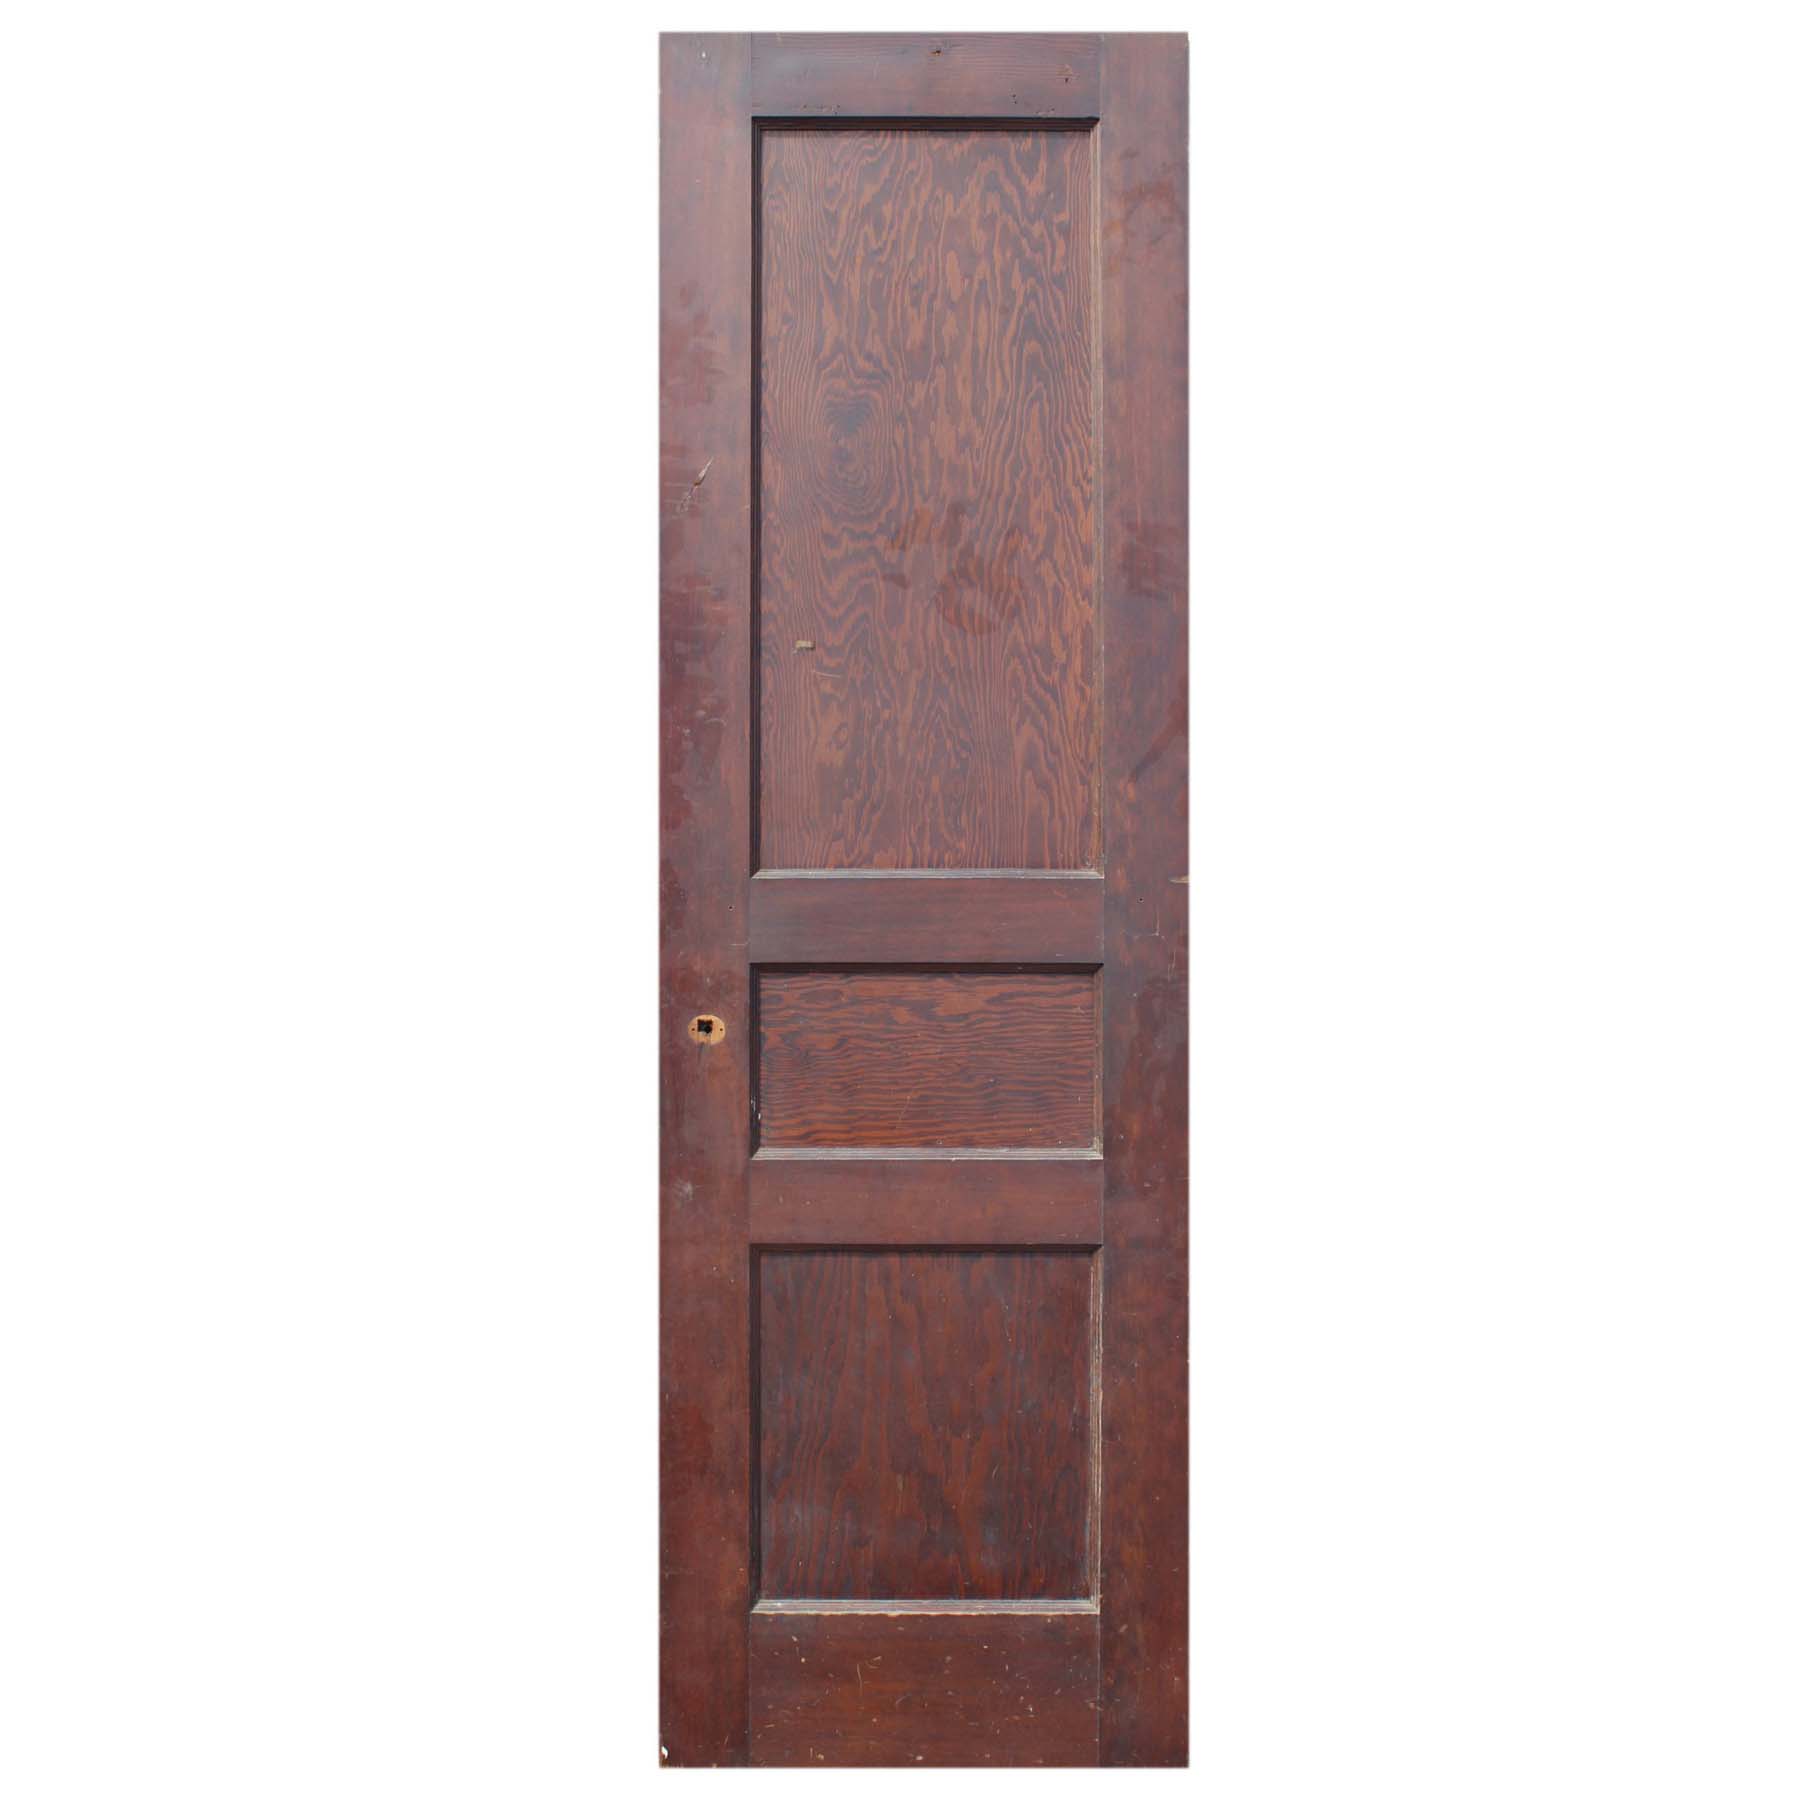 SOLD Antique 24” Three-Panel Solid Wood Door-71730